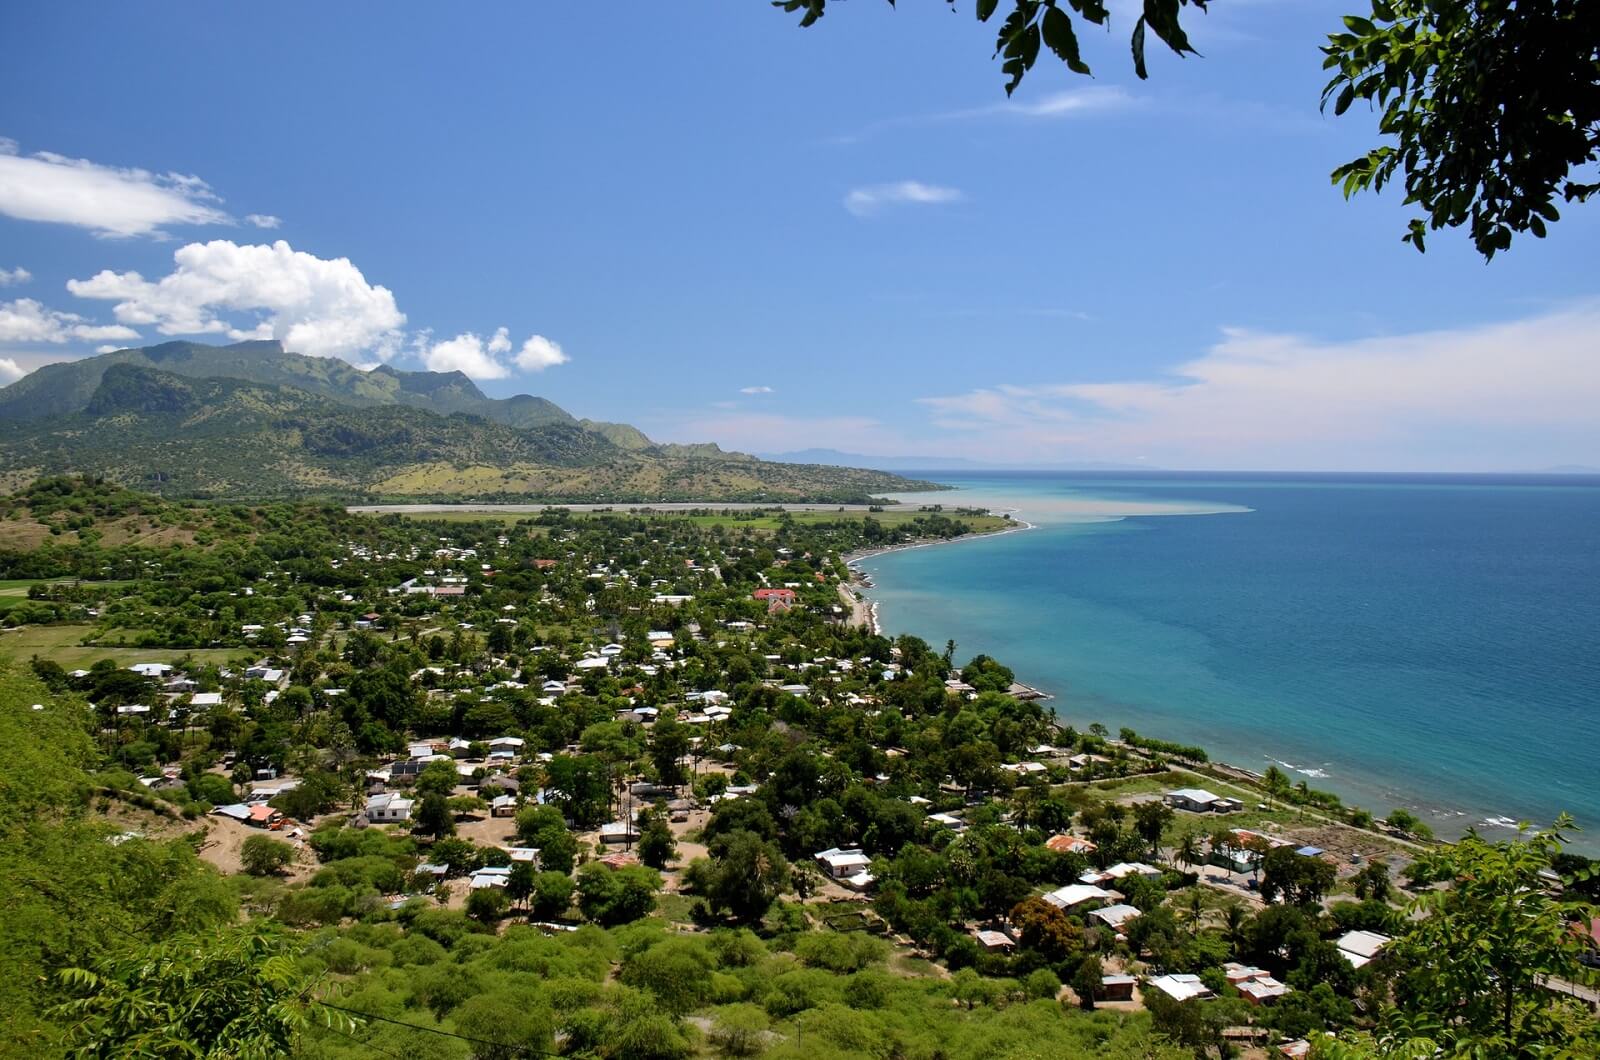 New Blue Economy Opportunities For Timor-Leste